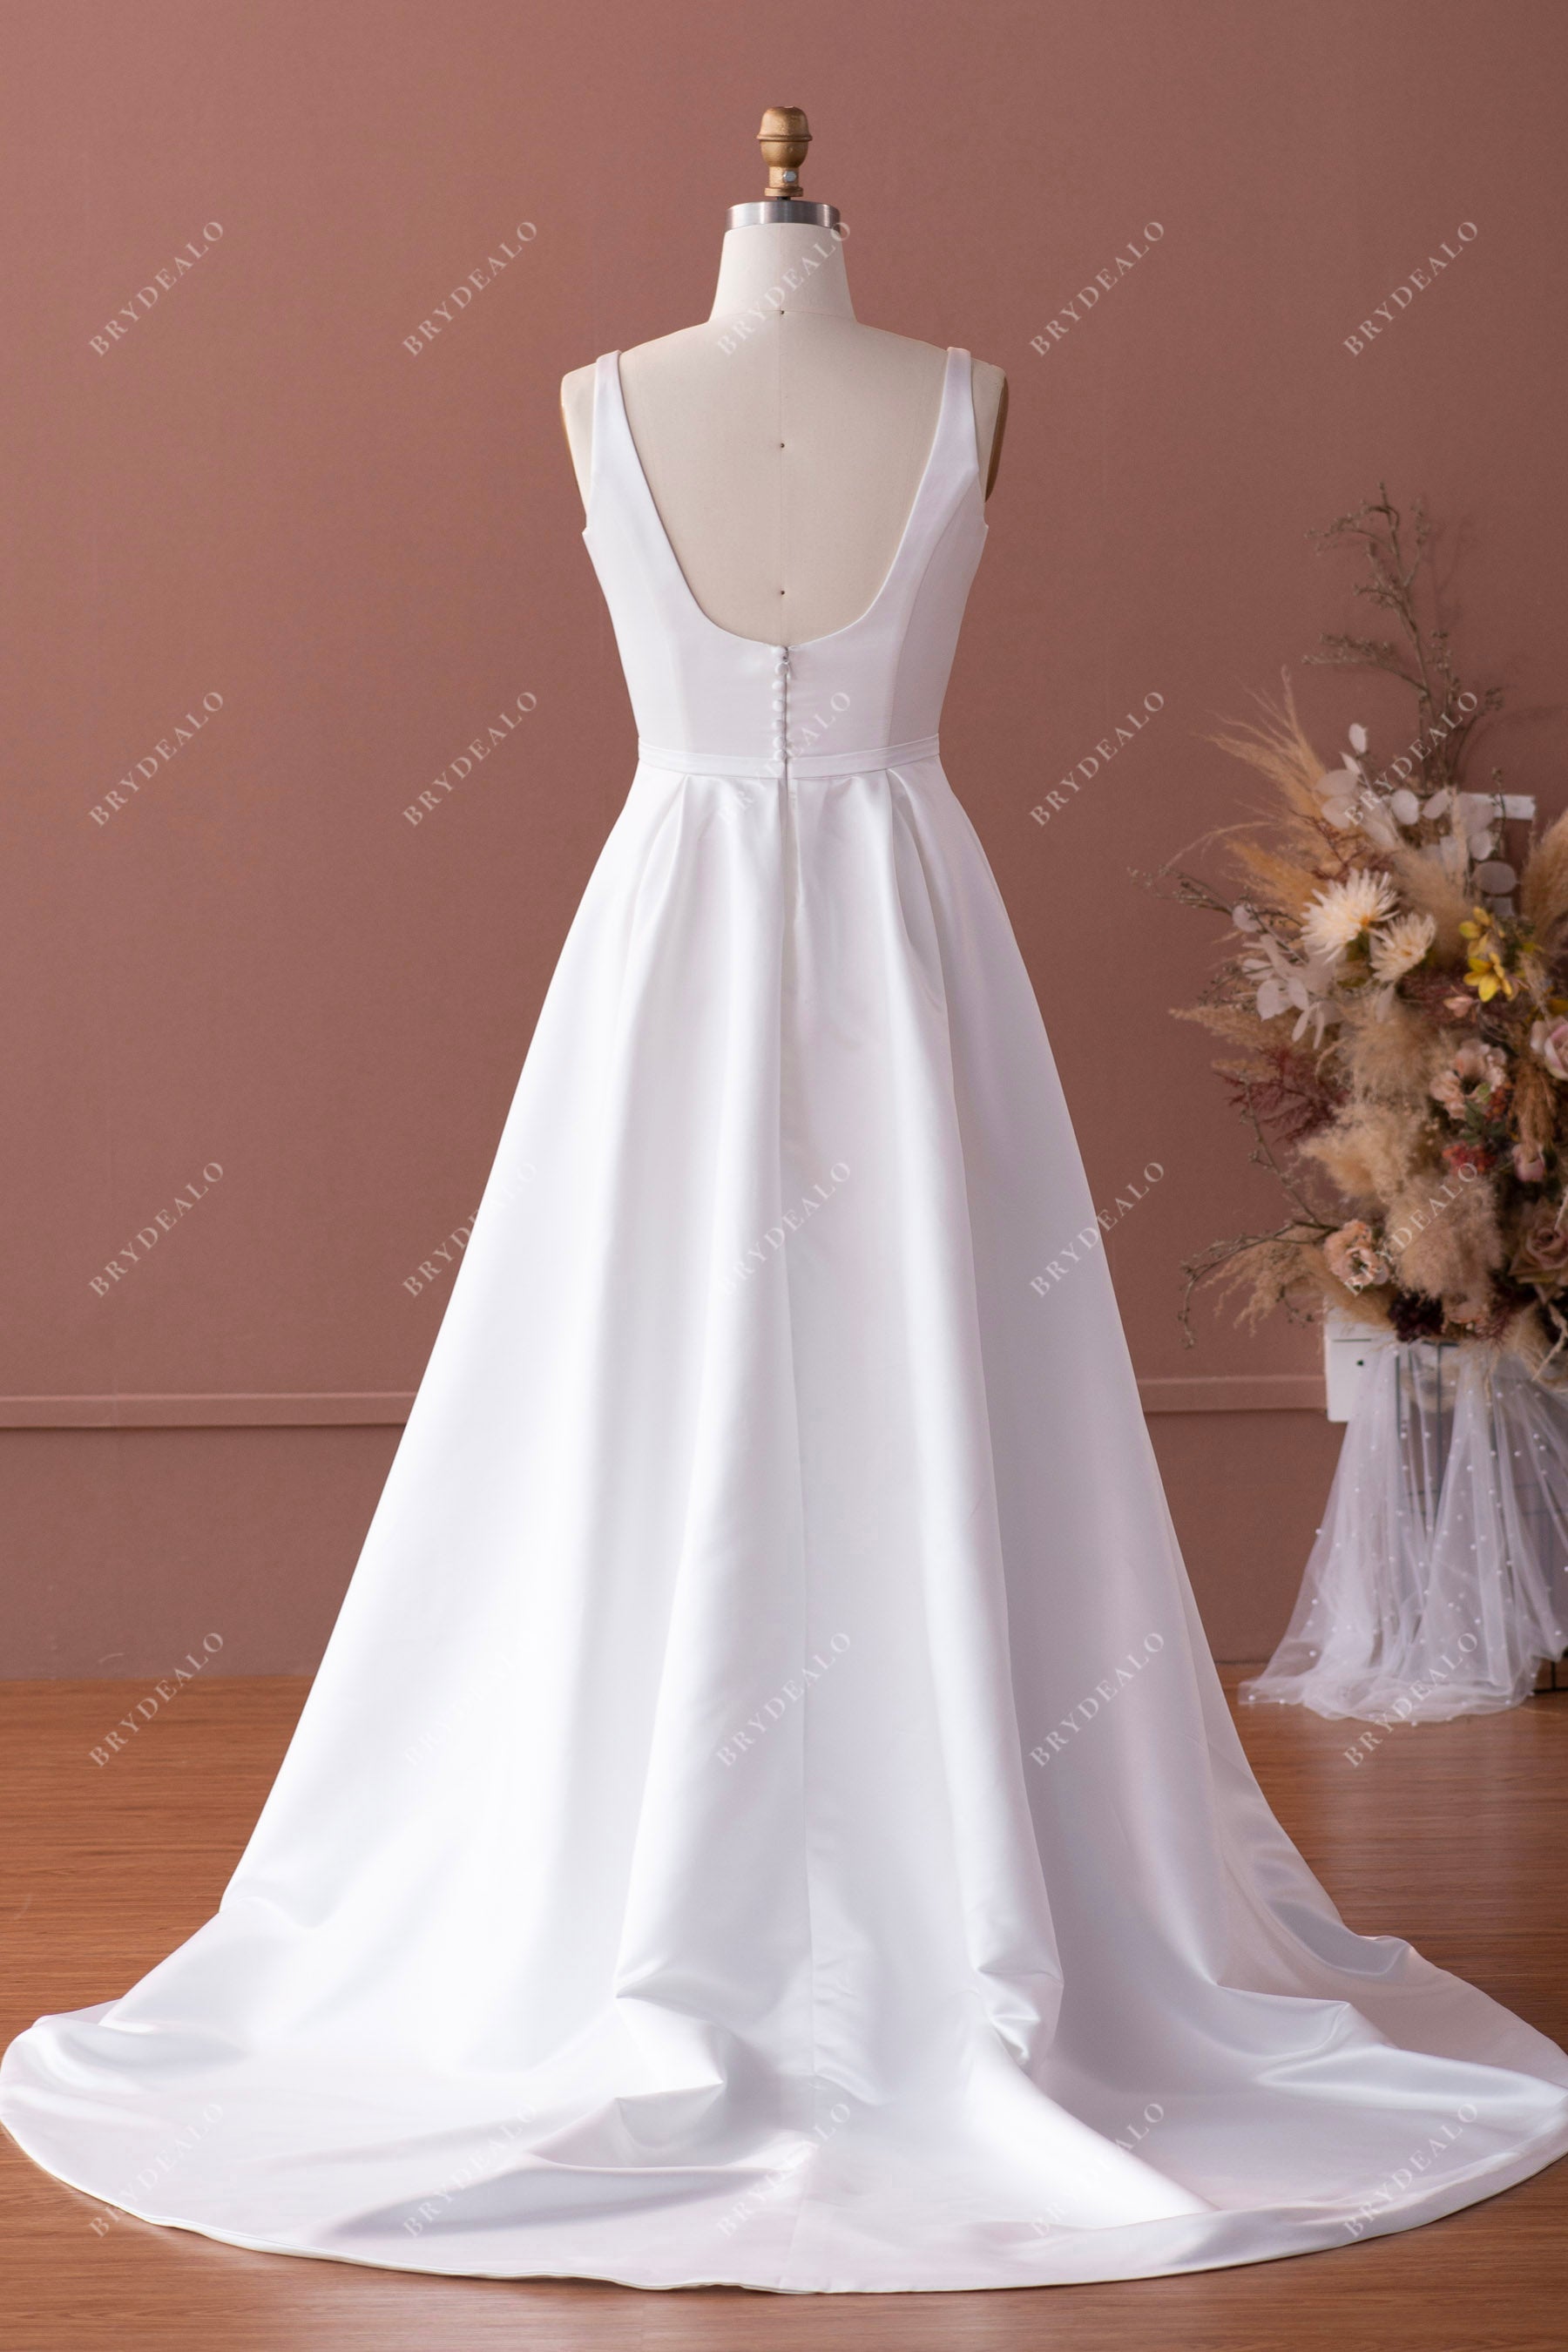 sleeveless open scoop back demure wedding gown